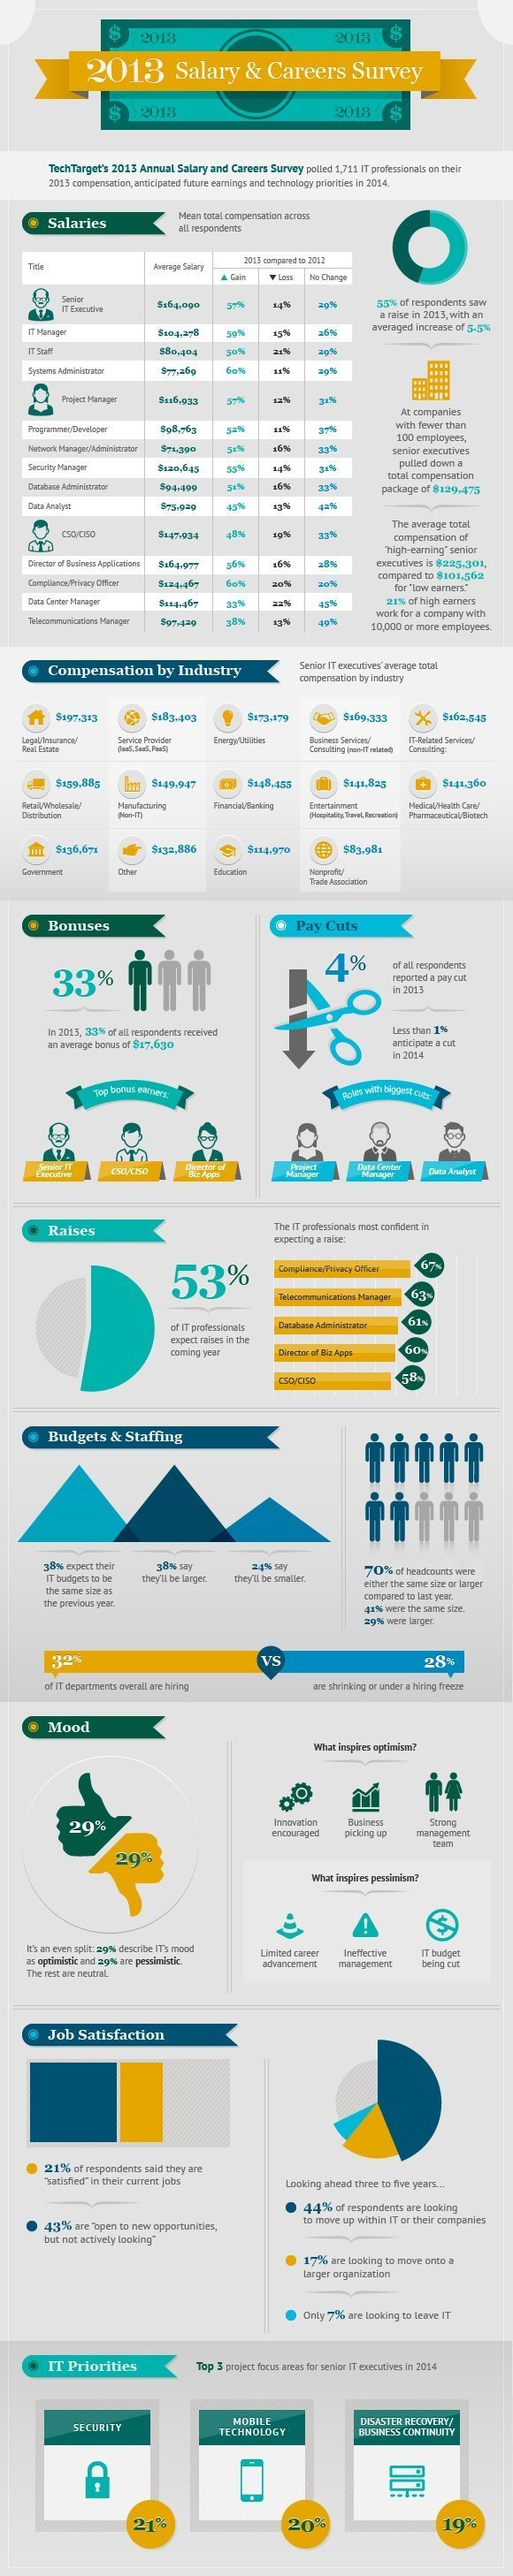 CIO IT salary infographic